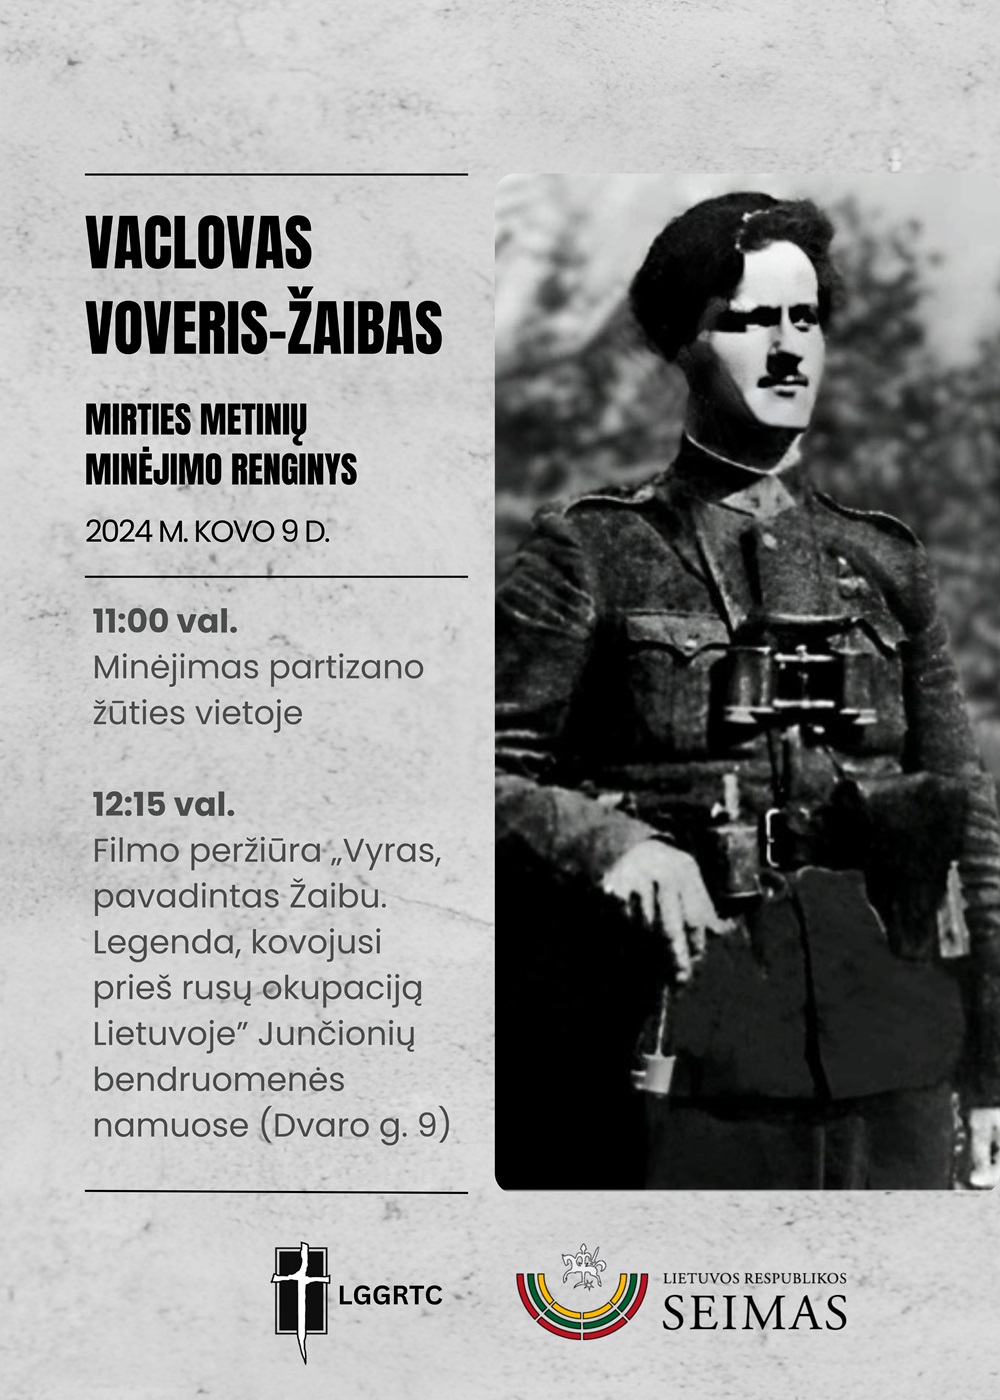 Alytuje bus paminėtos partizano V. Voverio-Žaibo ir jo bendražygių 75-osios žūties metinės | LGGRTC nuotr.